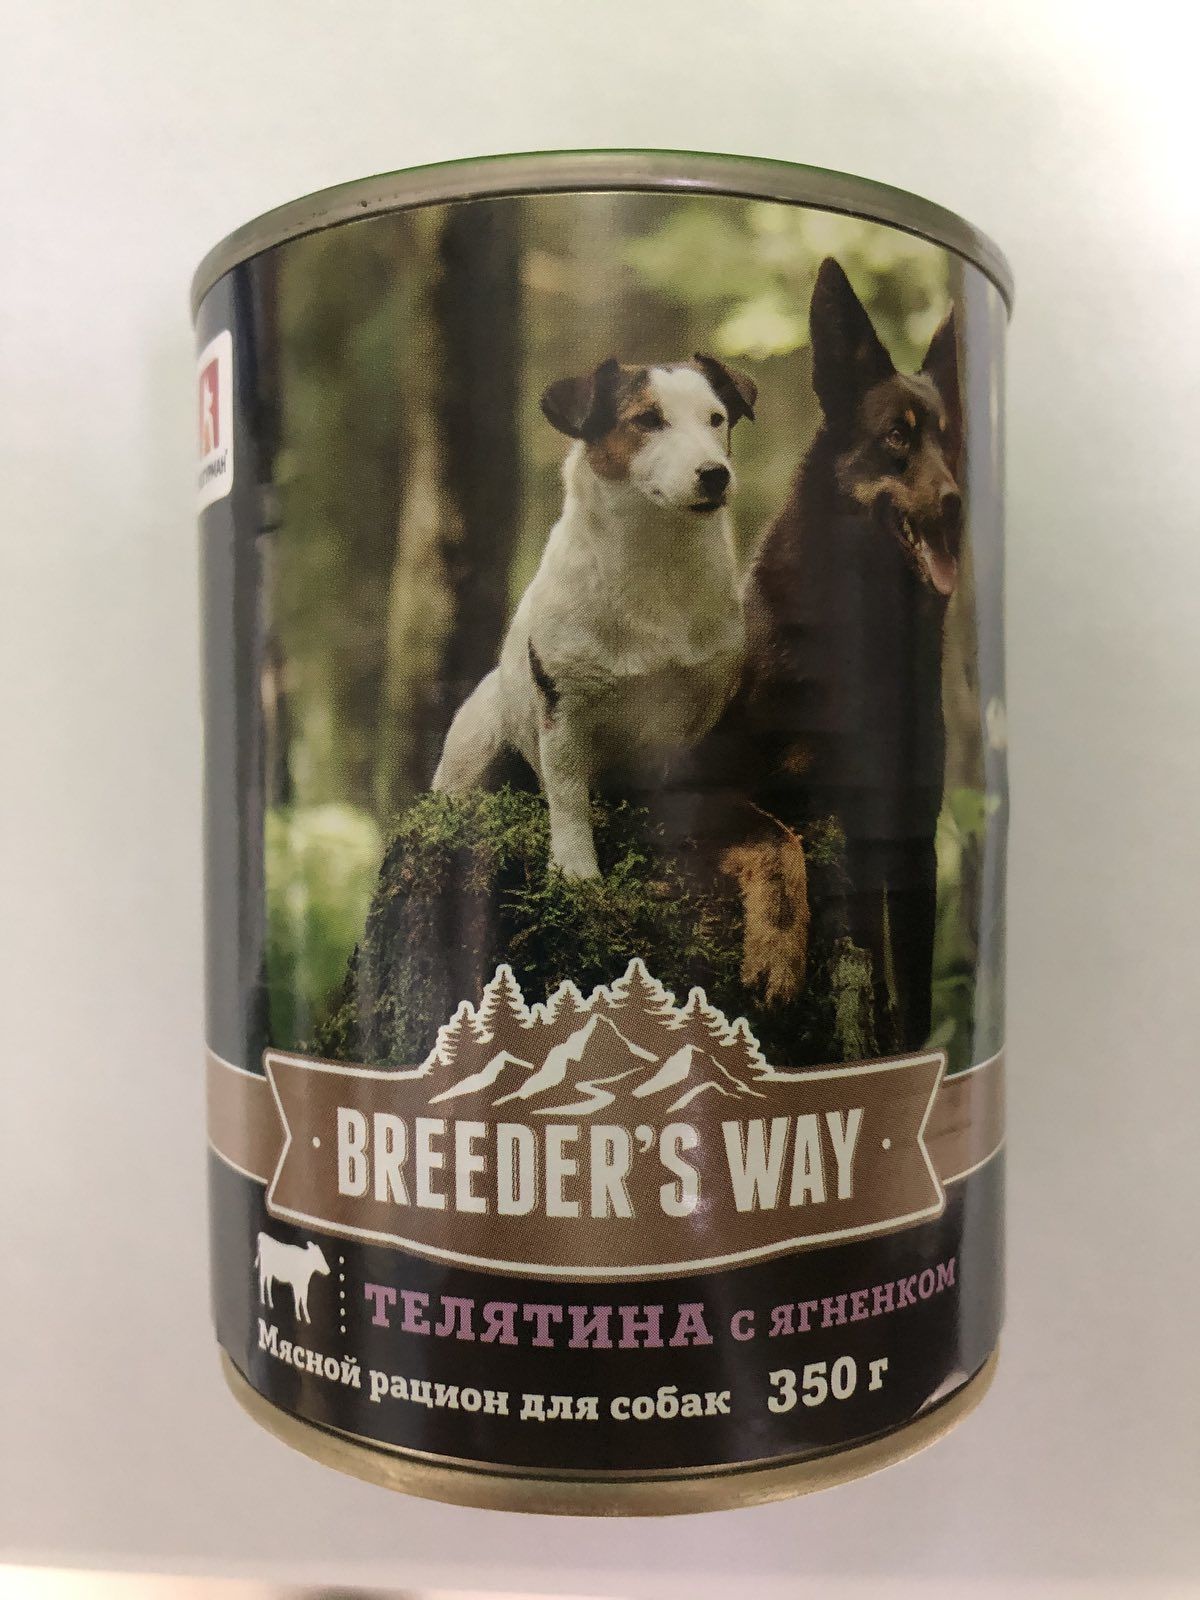 Breeder's Way консервы 350гс телятиной и ягненком для собак фото, цены, купить